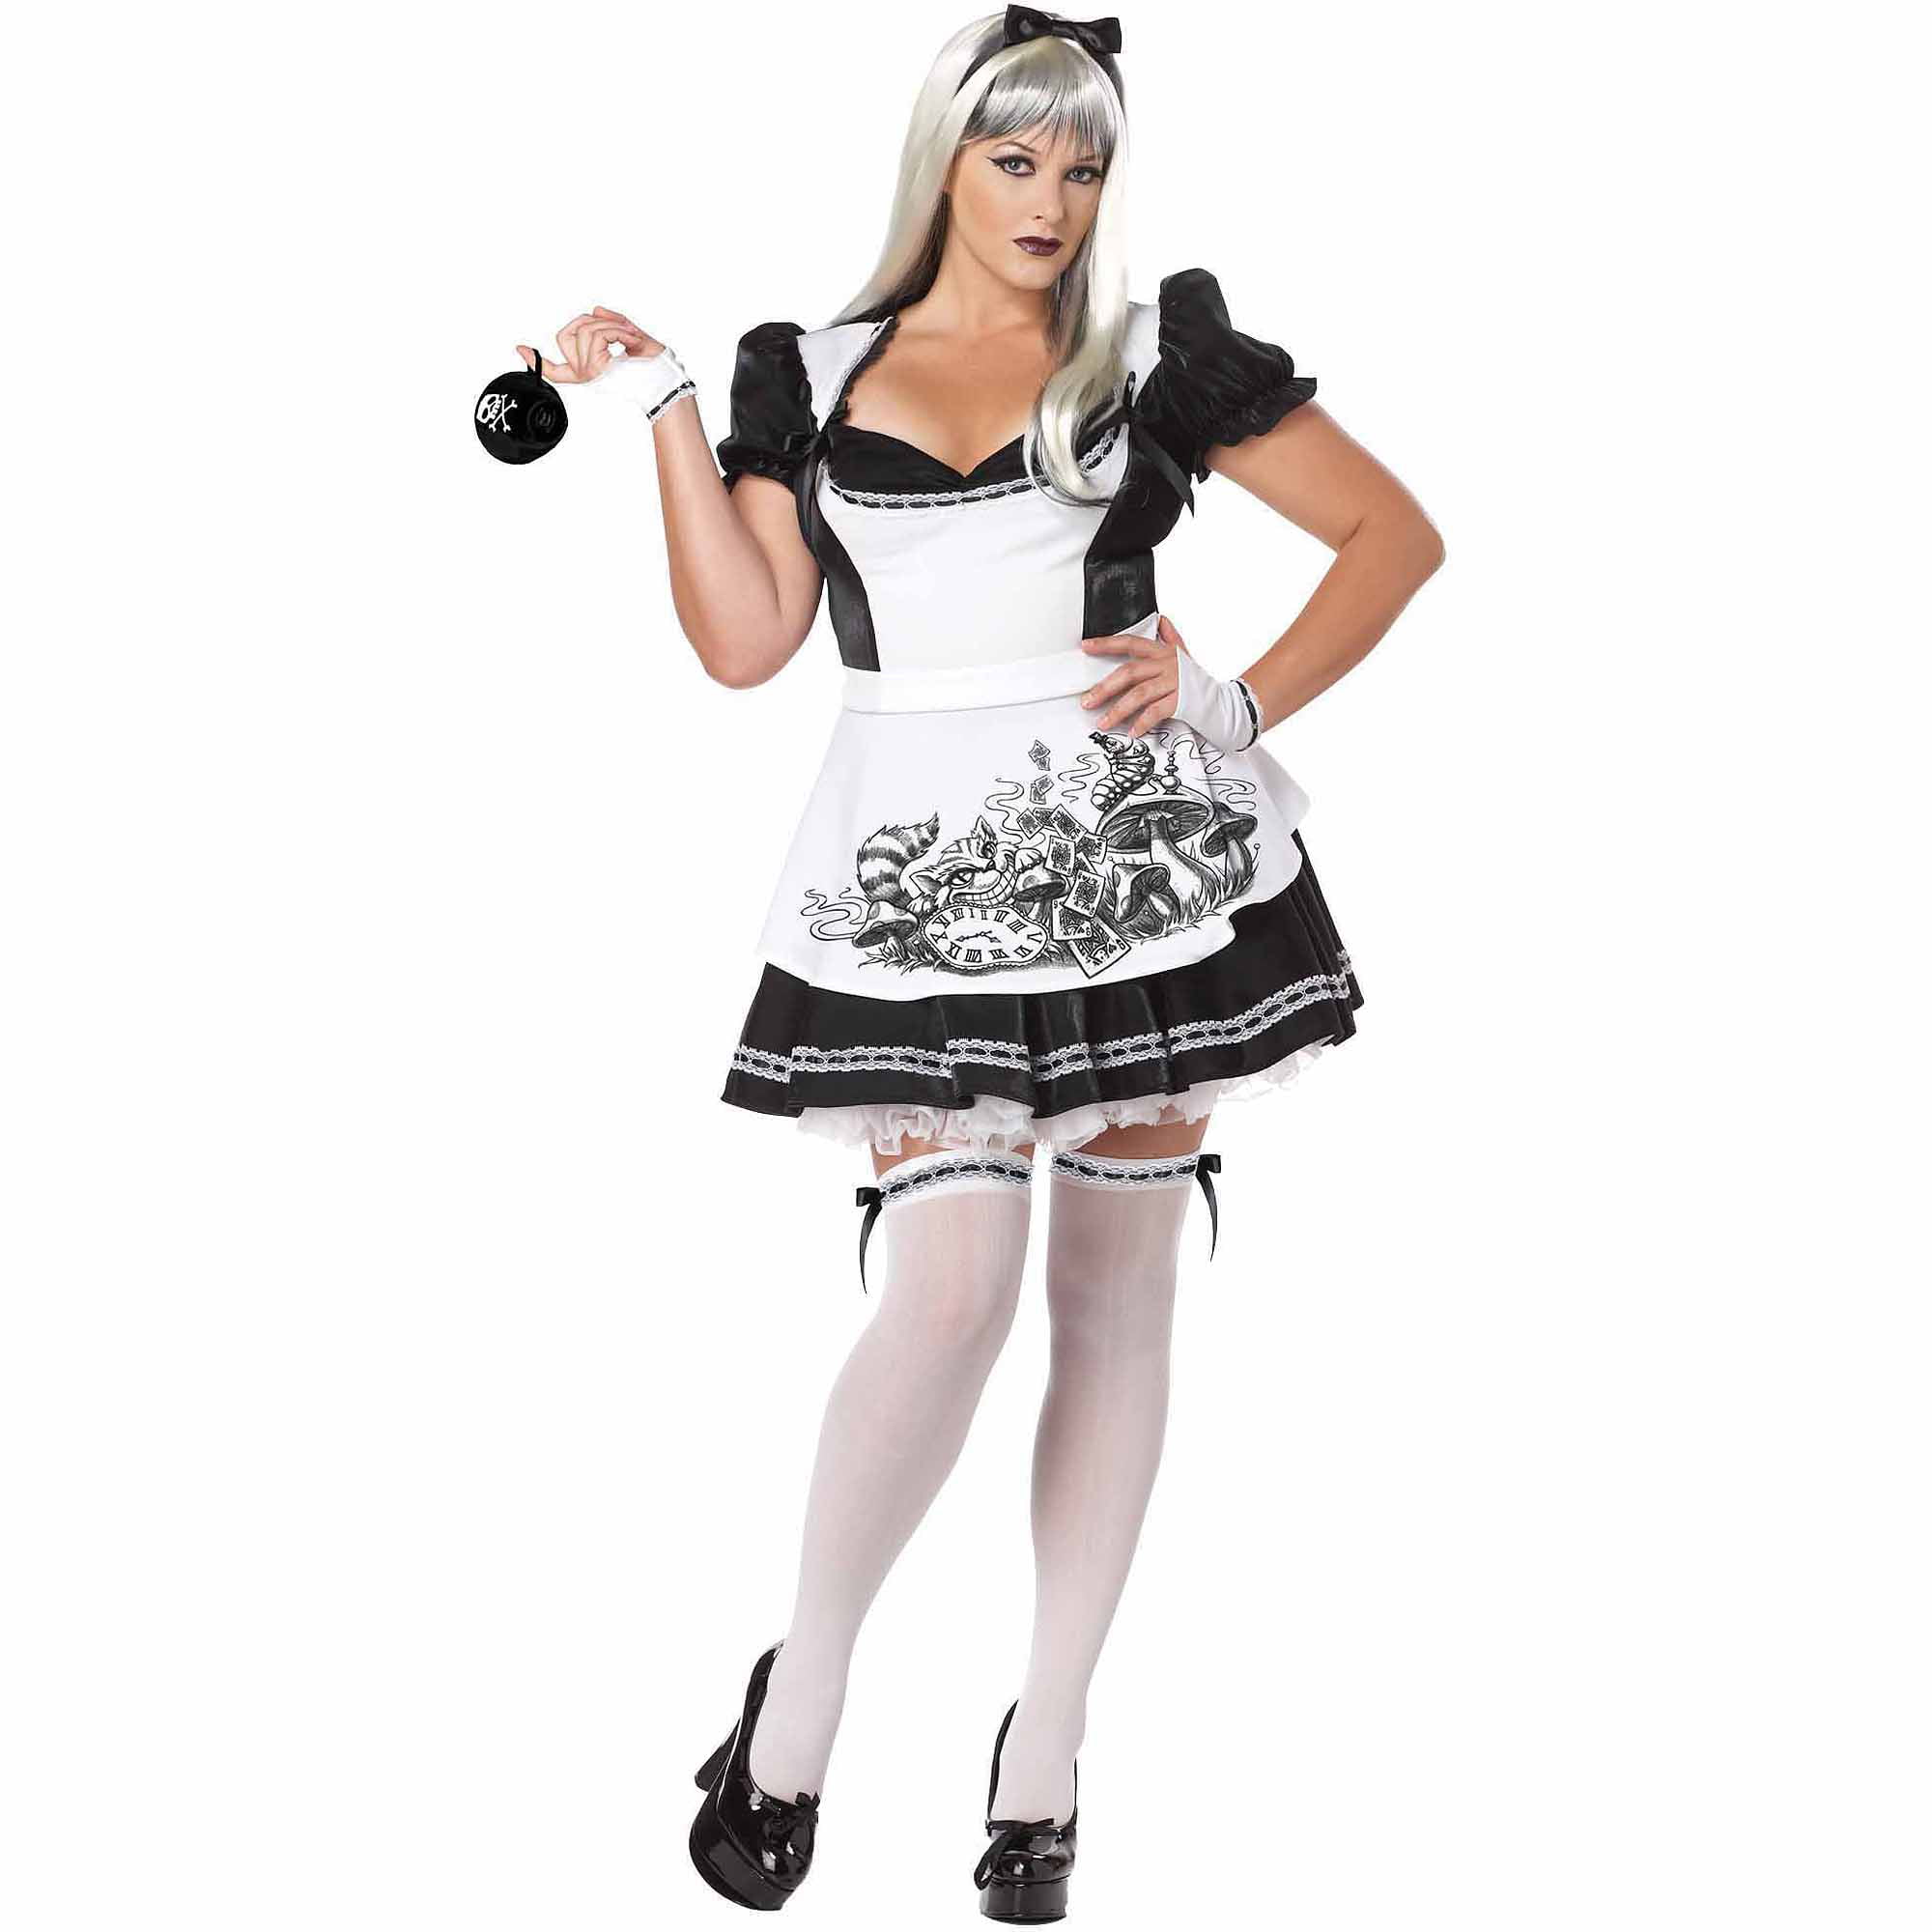 Dark Alice Adult Halloween Costume - Walmart.com